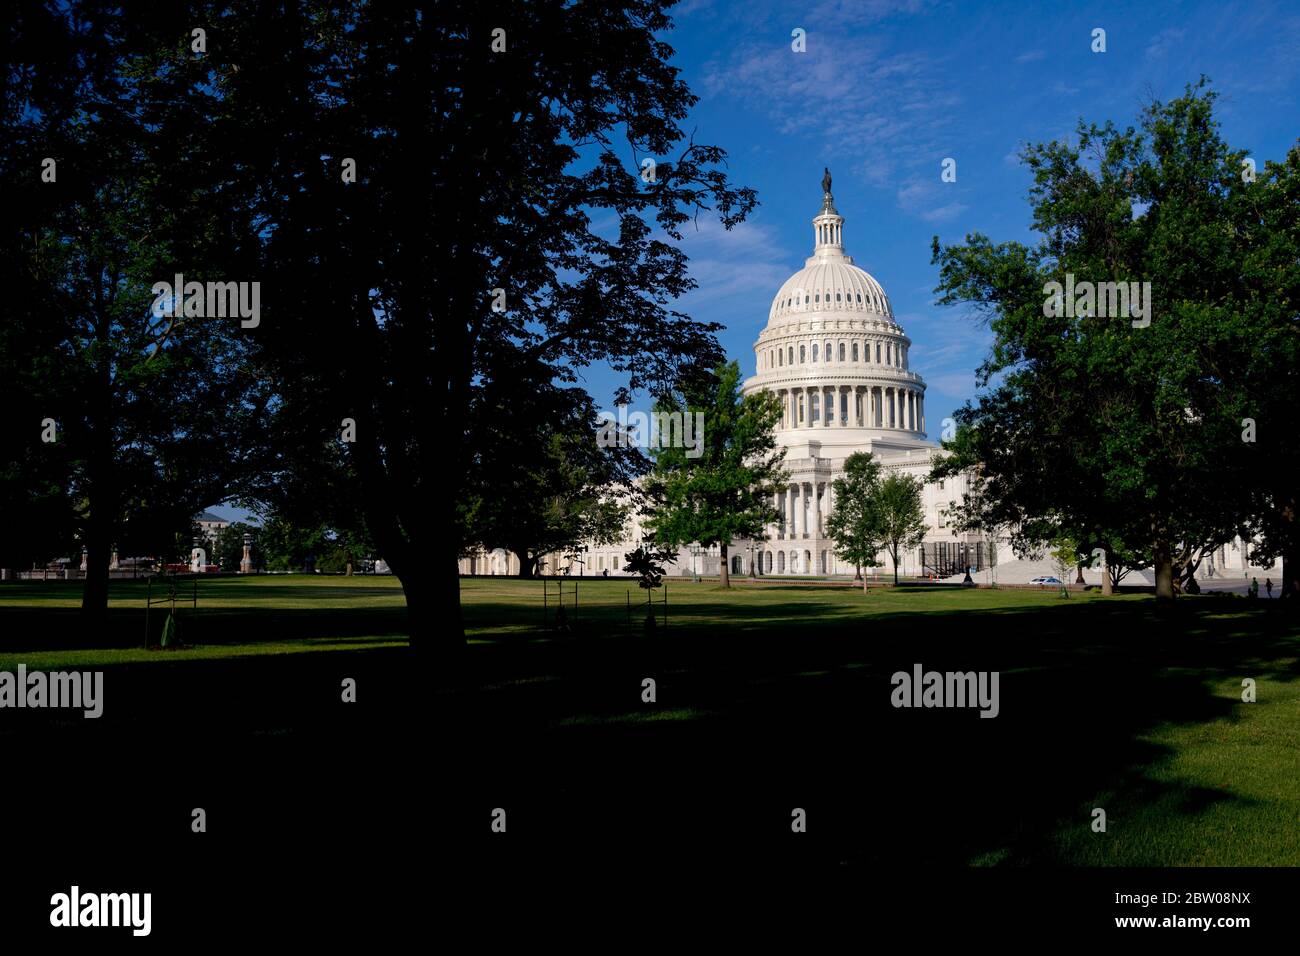 Le Capitole des États-Unis, First St se, Washington, DC 20004, États-Unis. Photographié en journée. Destination touristique américaine. Congrès des États-Unis Banque D'Images